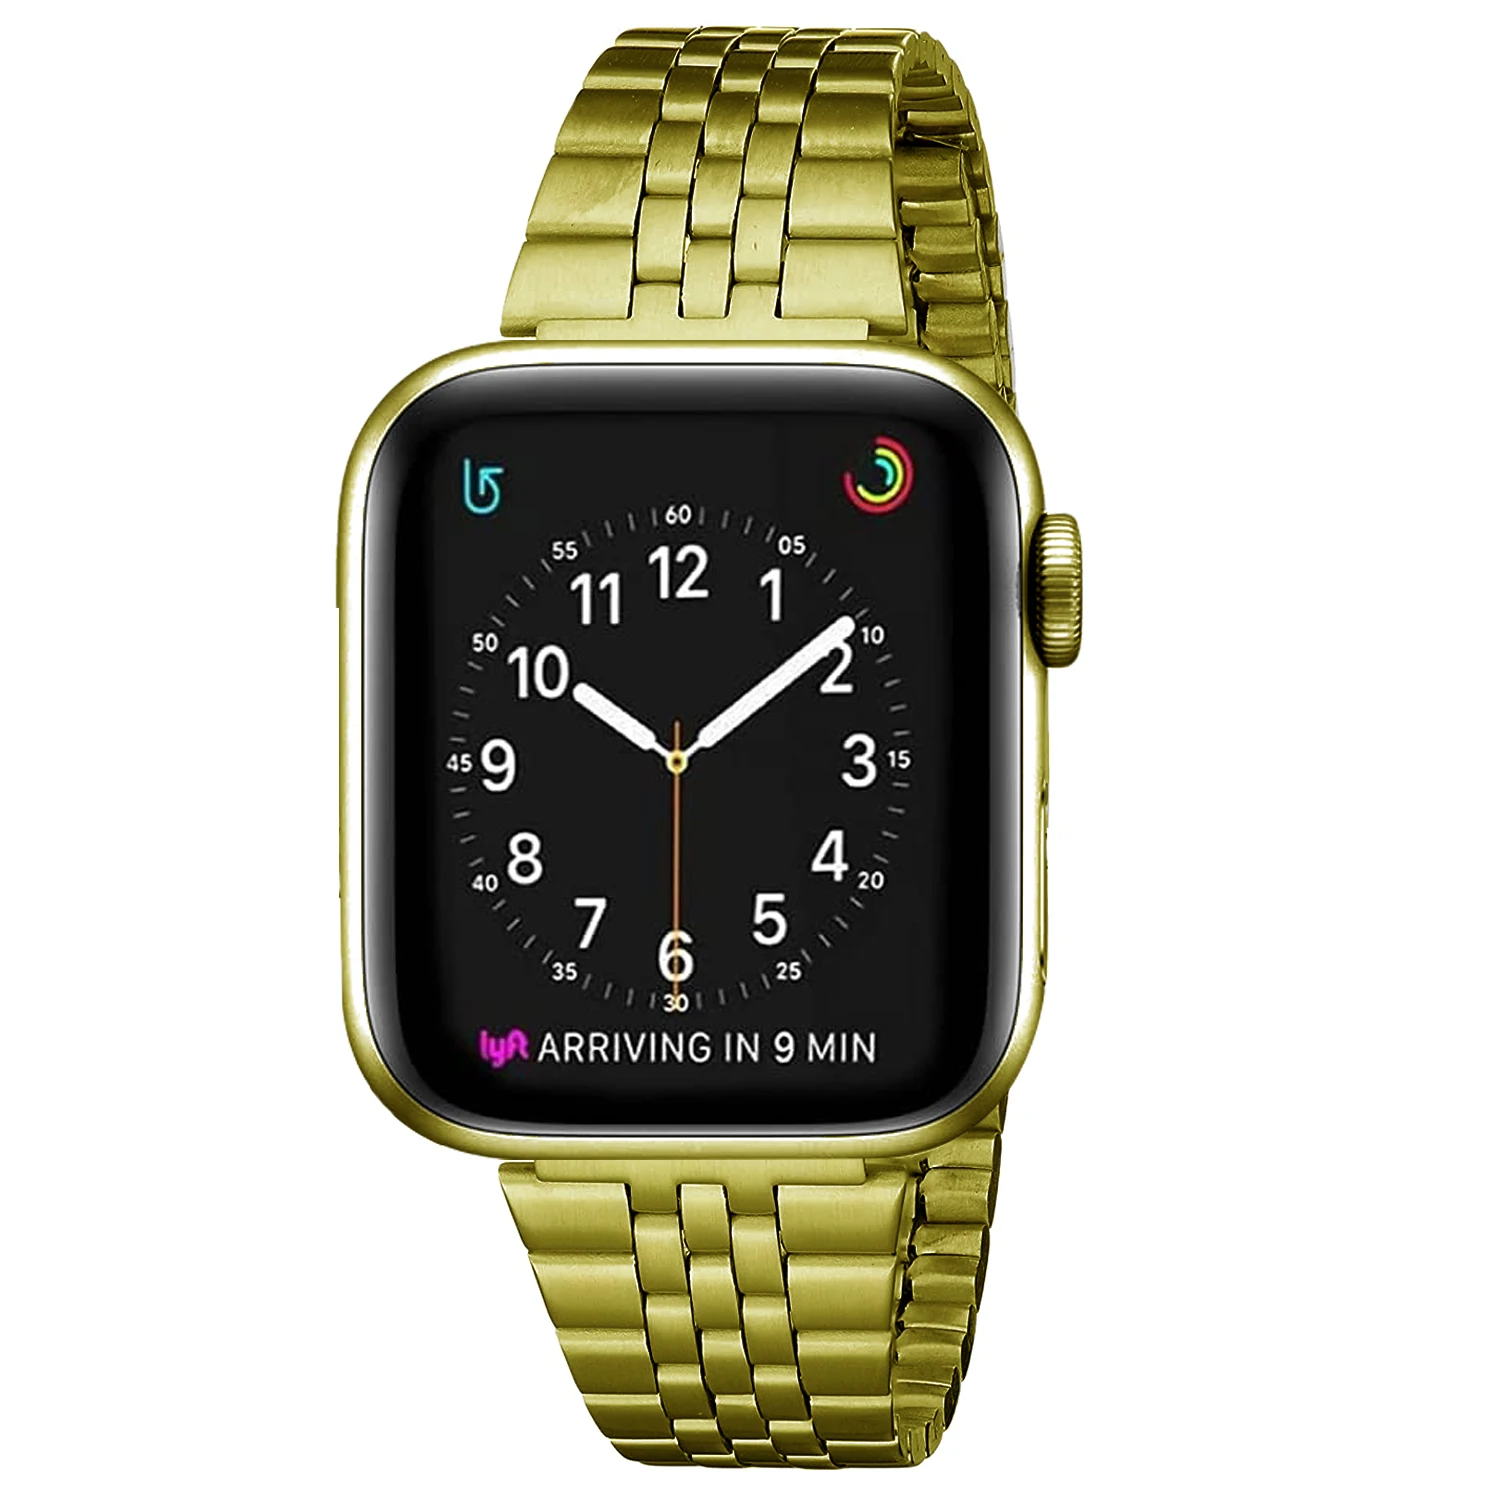 Correa delgada de acero inoxidable para Apple watch, pulsera deportiva de Metal de 41mm, 40mm, 45mm y 38mm para iWatch series 8/7/6/SE/5/4